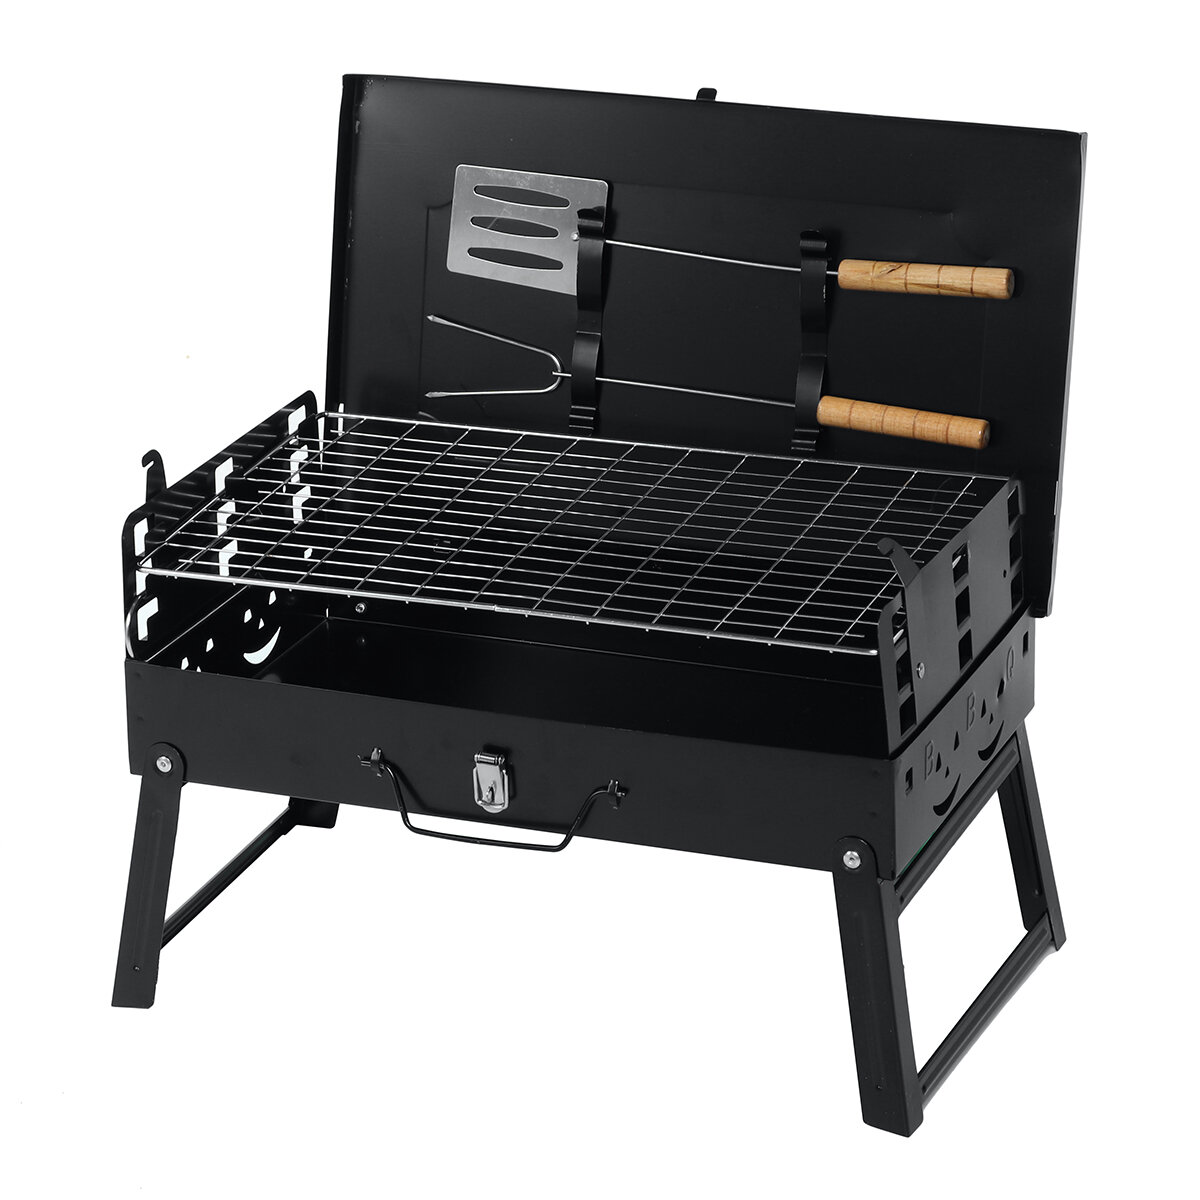 Zware opvouwbare barbecue-oven set met kampvuurgrill, draagbare vierkante kookplaat